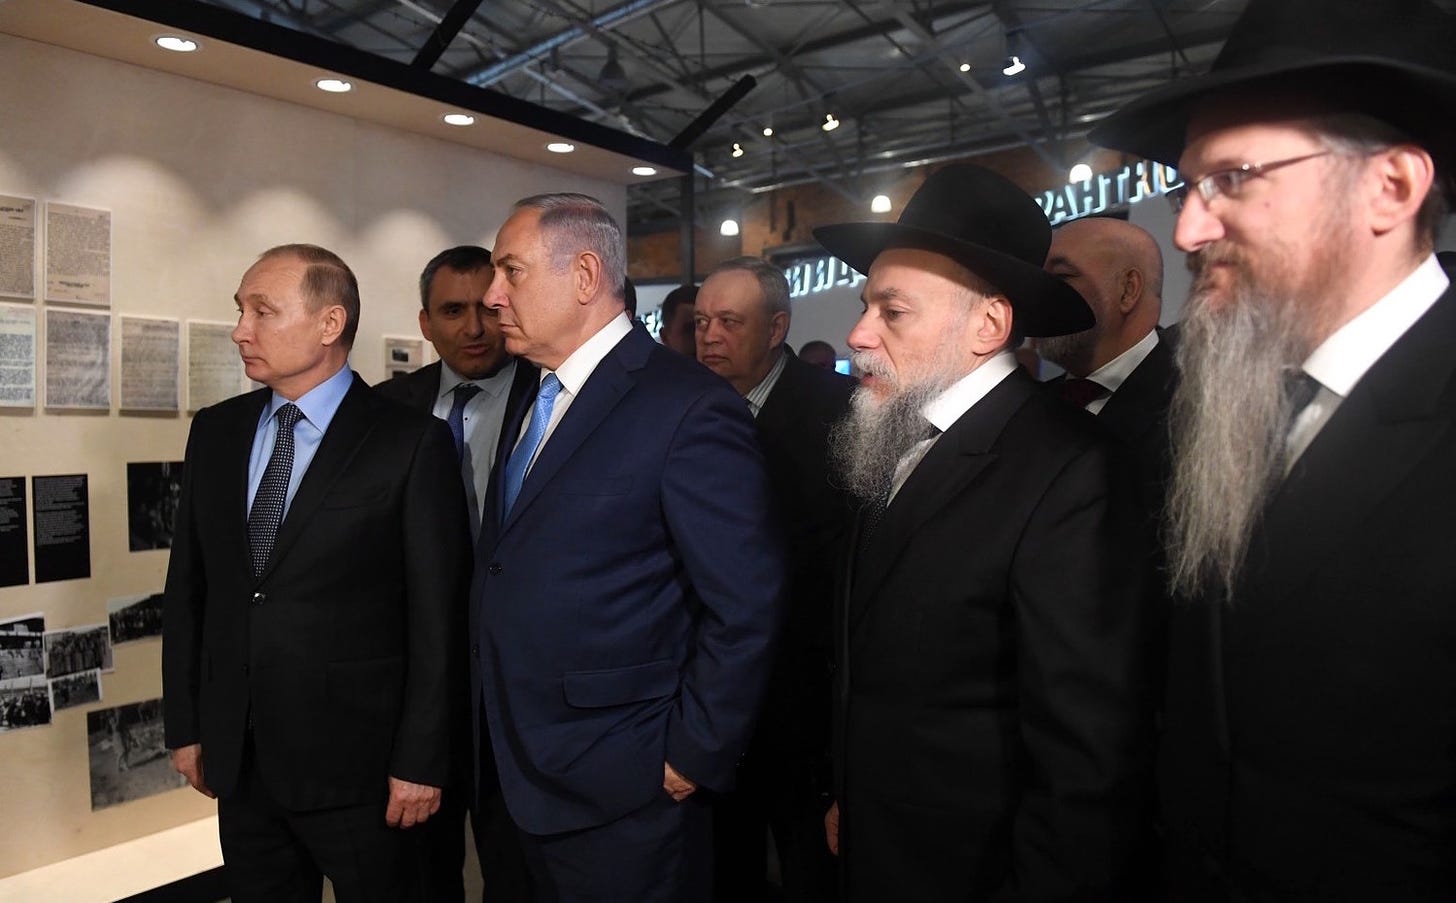 Putin an anti-Semite? It really doesn't matter | The Jewish Star |  www.thejewishstar.com